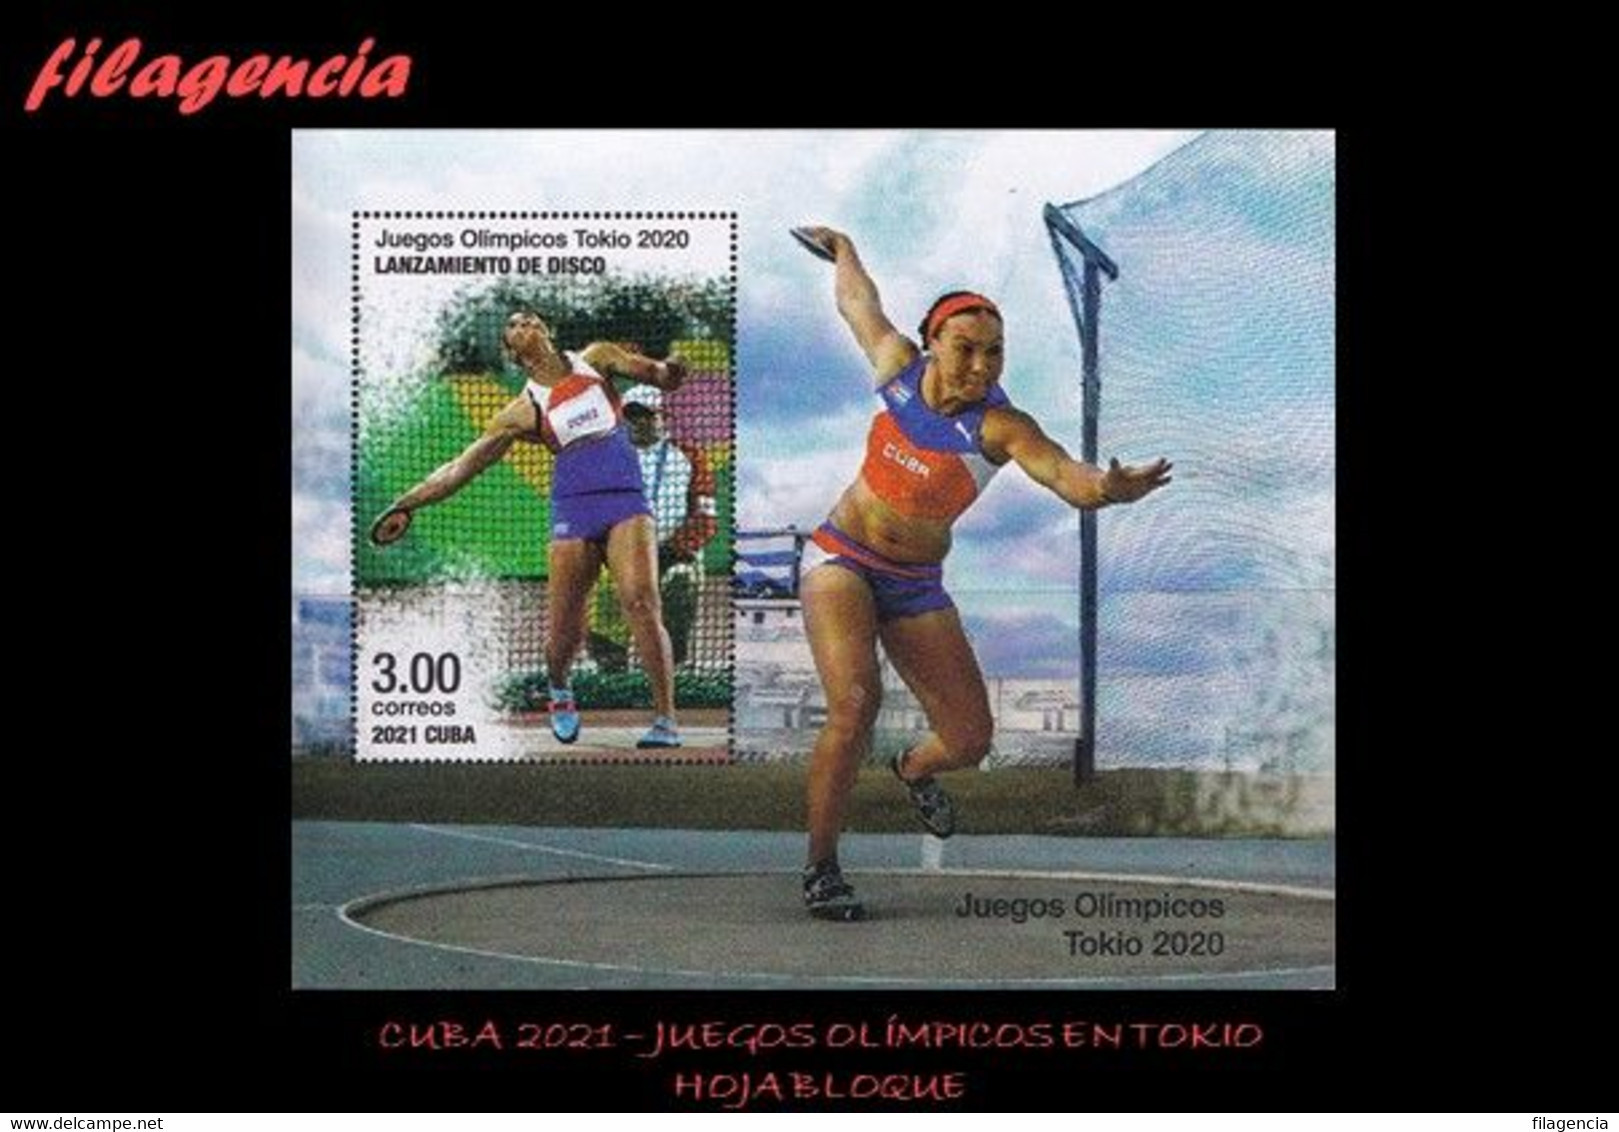 AMERICA. CUBA MINT. 2021 JUEGOS OLÍMPICOS EN TOKIO. HOJA BLOQUE - Nuovi